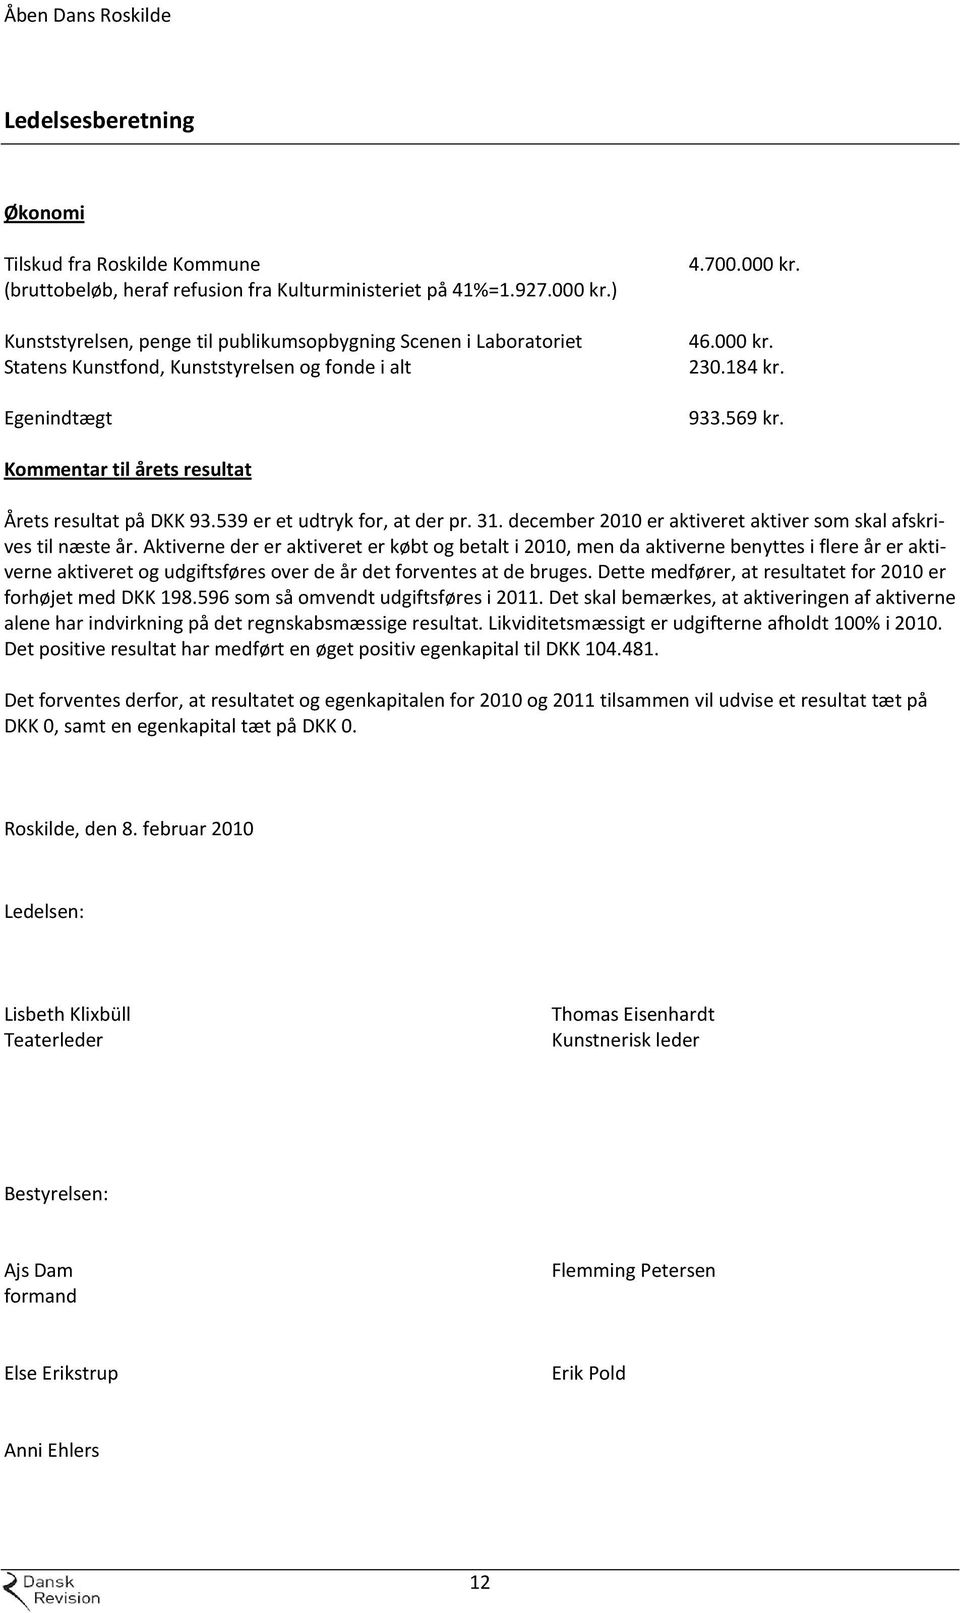 Kommentar til årets resultat Årets resultat på DKK 93.539 er et udtryk for, at der pr. 31. december 2010 er aktiveret aktiver som skal afskrives til næste år.